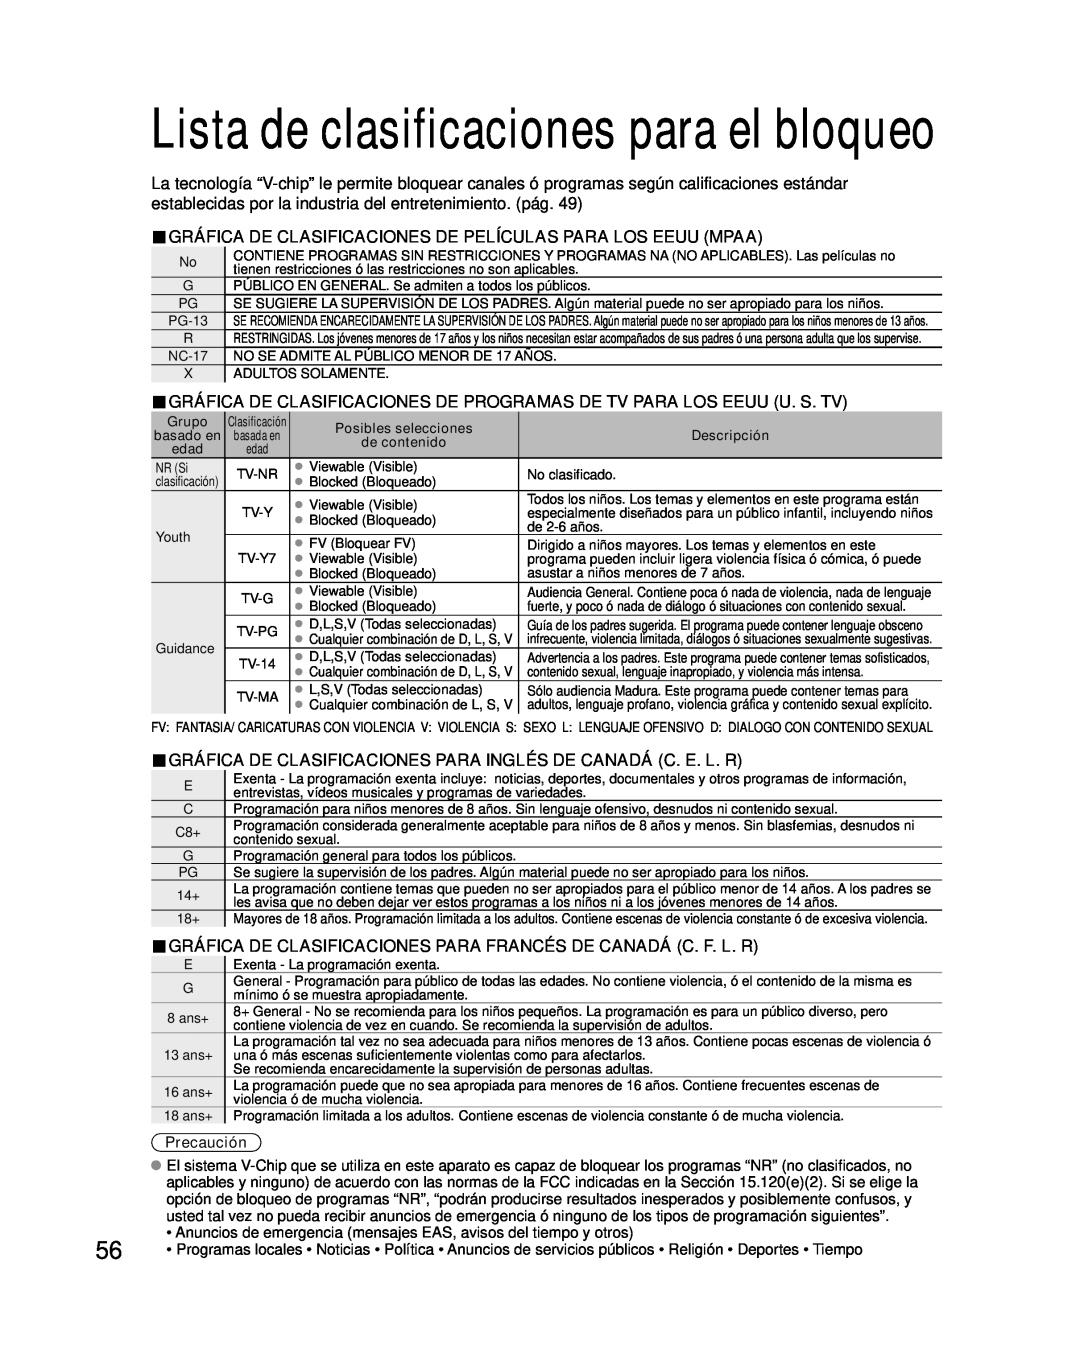 Panasonic TC-P46G10 Lista de clasificaciones para el bloqueo, Gráfica De Clasificaciones De Películas Para Los Eeuu Mpaa 